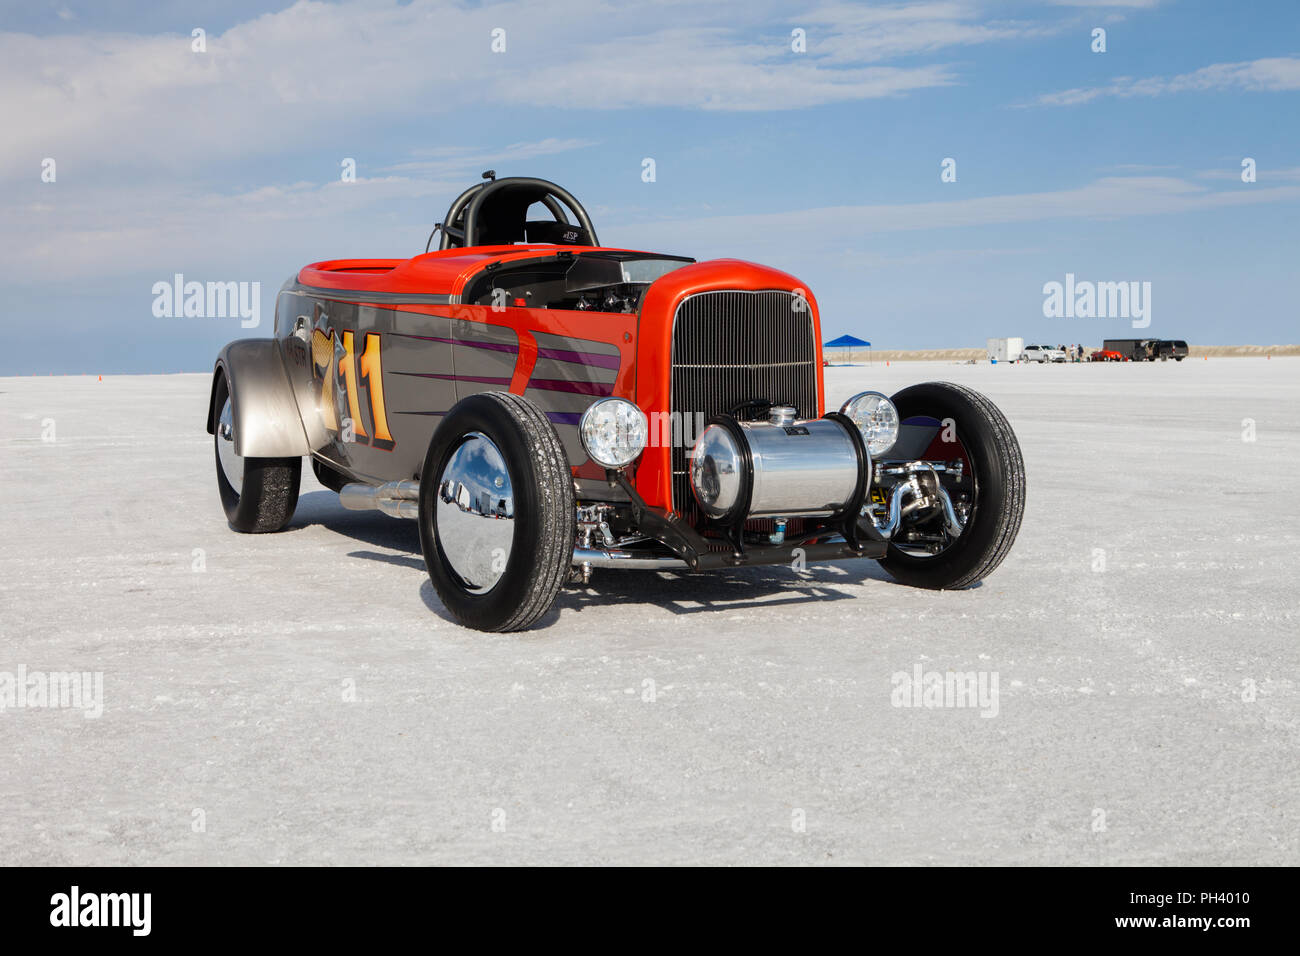 Vintage Speedster auf den Bonneville Salt Flats internationalen Speedway, in der Nähe von Wendover in Utah, der viele land Geschwindigkeitsrekorde. Stockfoto